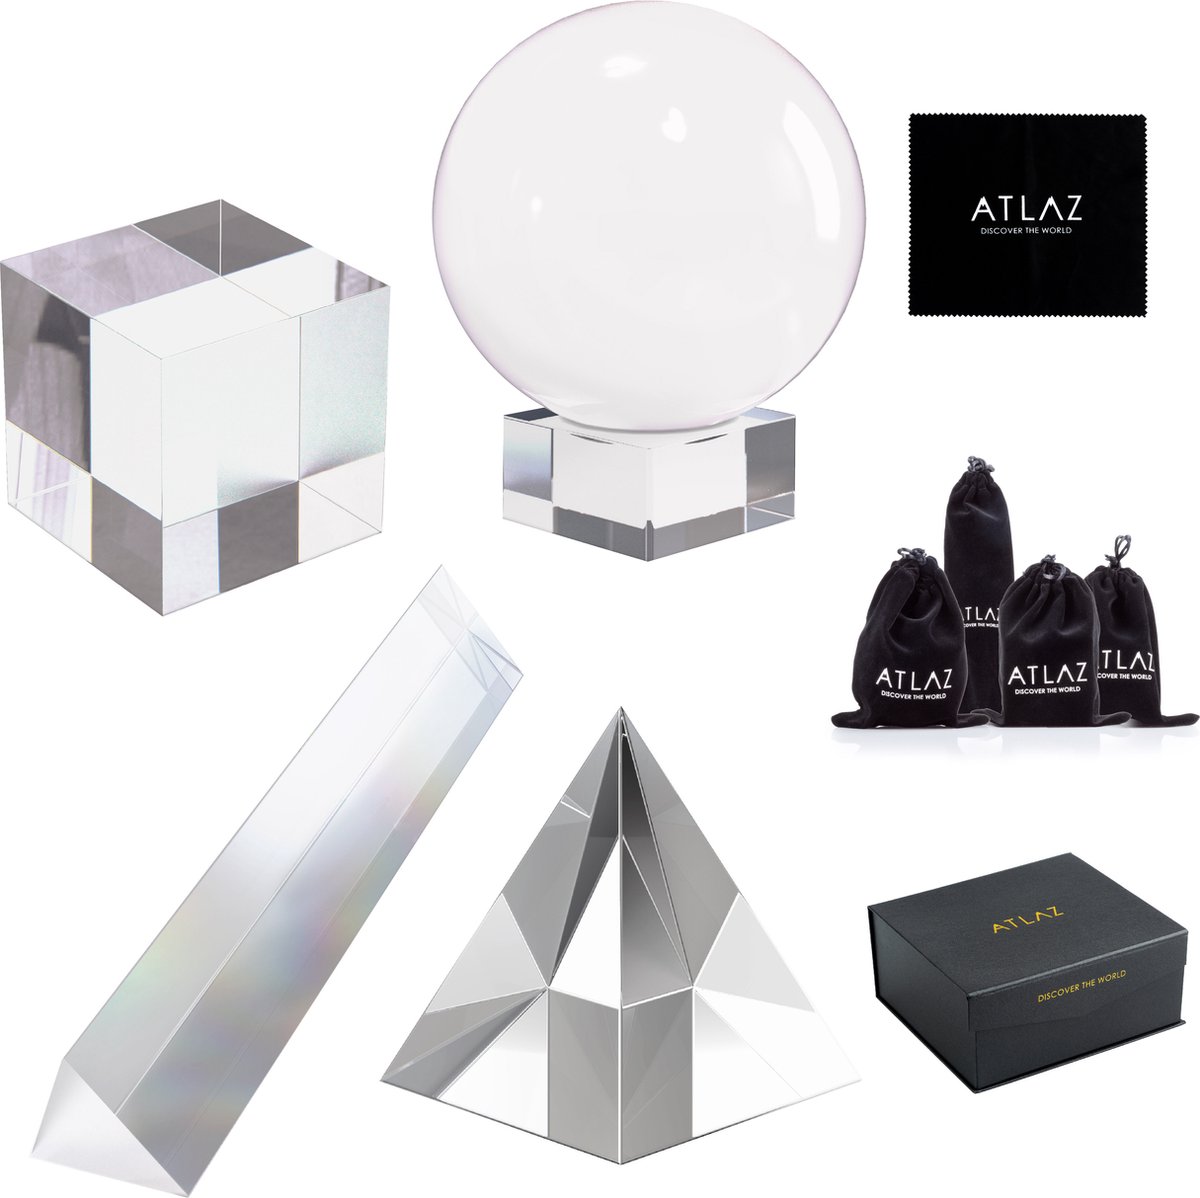 ATLAZ Glazen Fotografie Accessoires Set - Kristallen Bol, Prisma, Piramide & Kubus - Incl. Microvezeldoek & Opbergzak - ATLAZ®